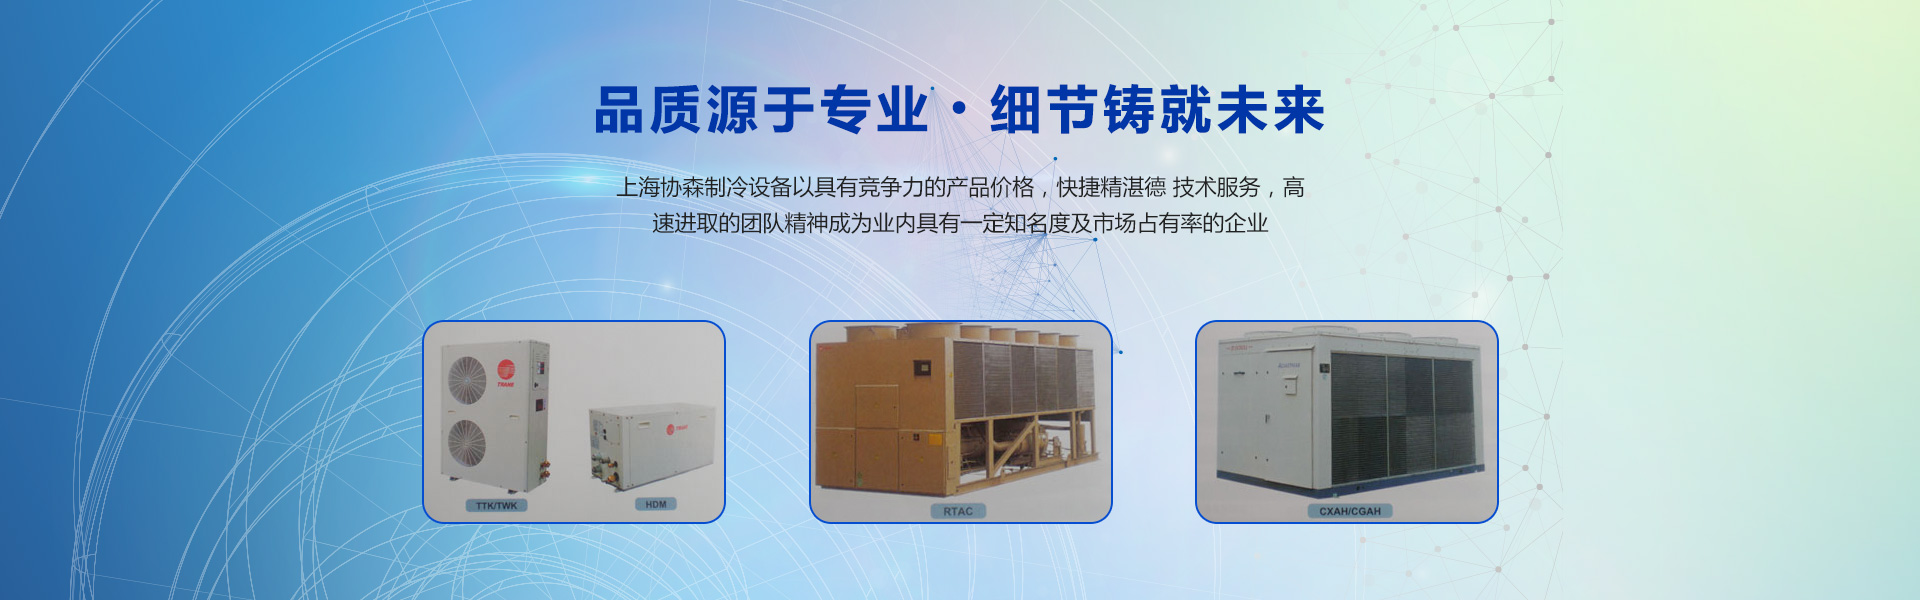 上海协森制冷设备工程有限公司